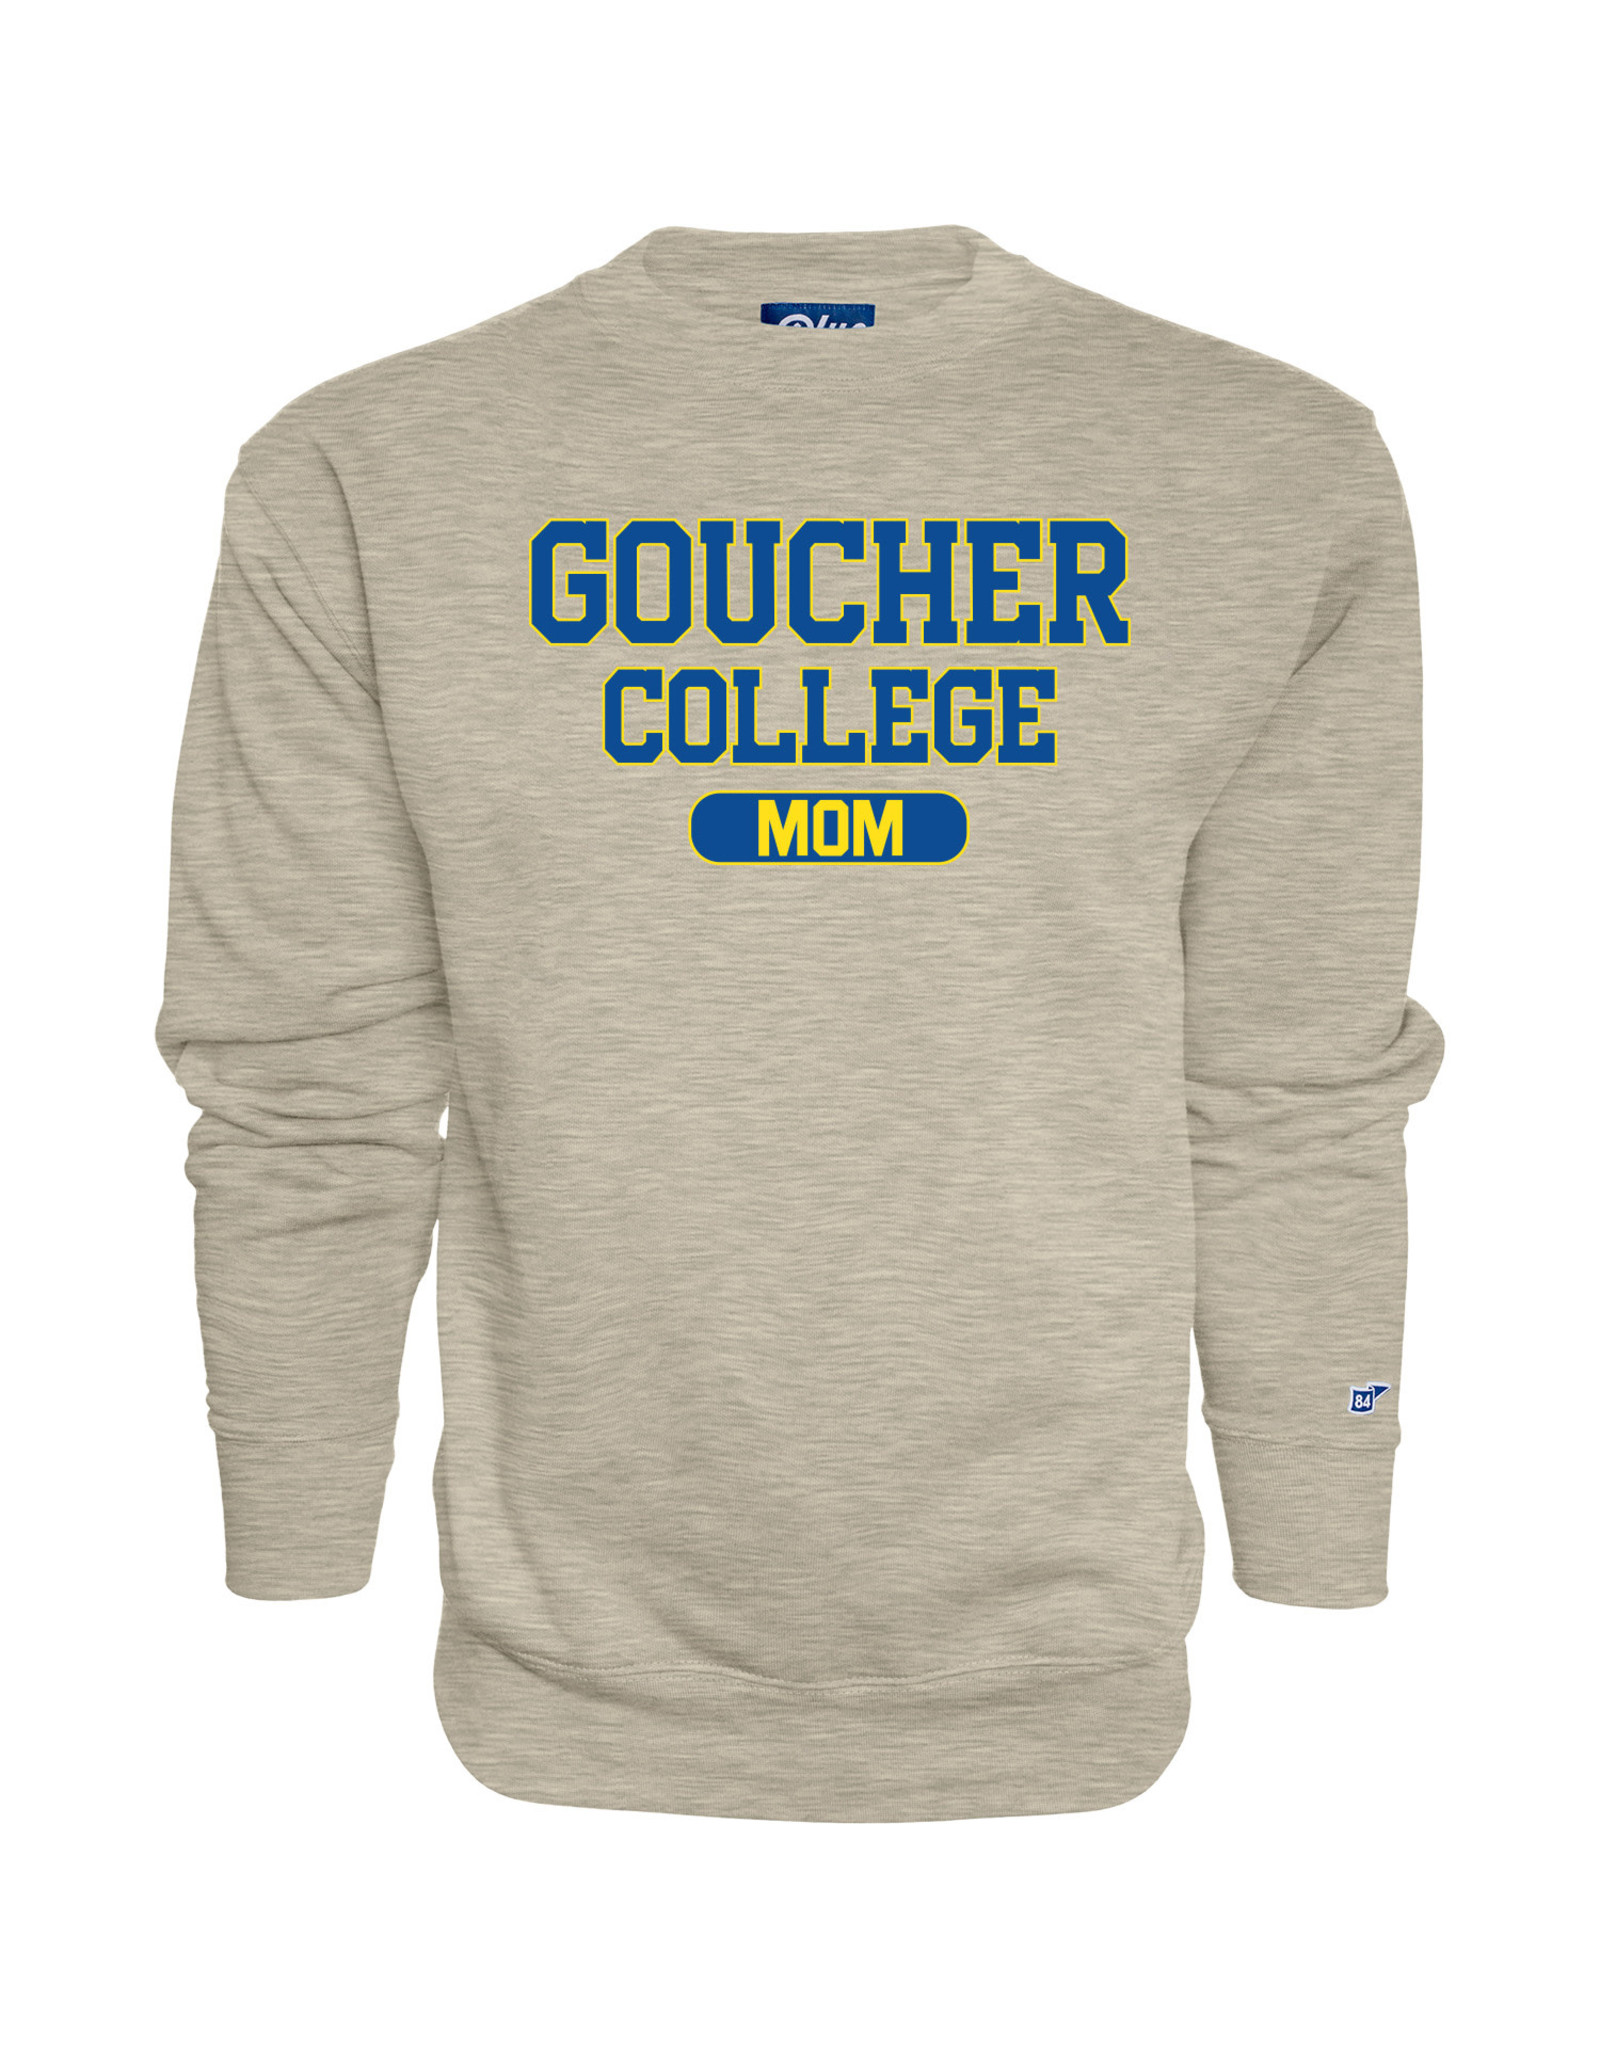 Blue84 "Goucher College Mom" Crewneck Sweatshirt